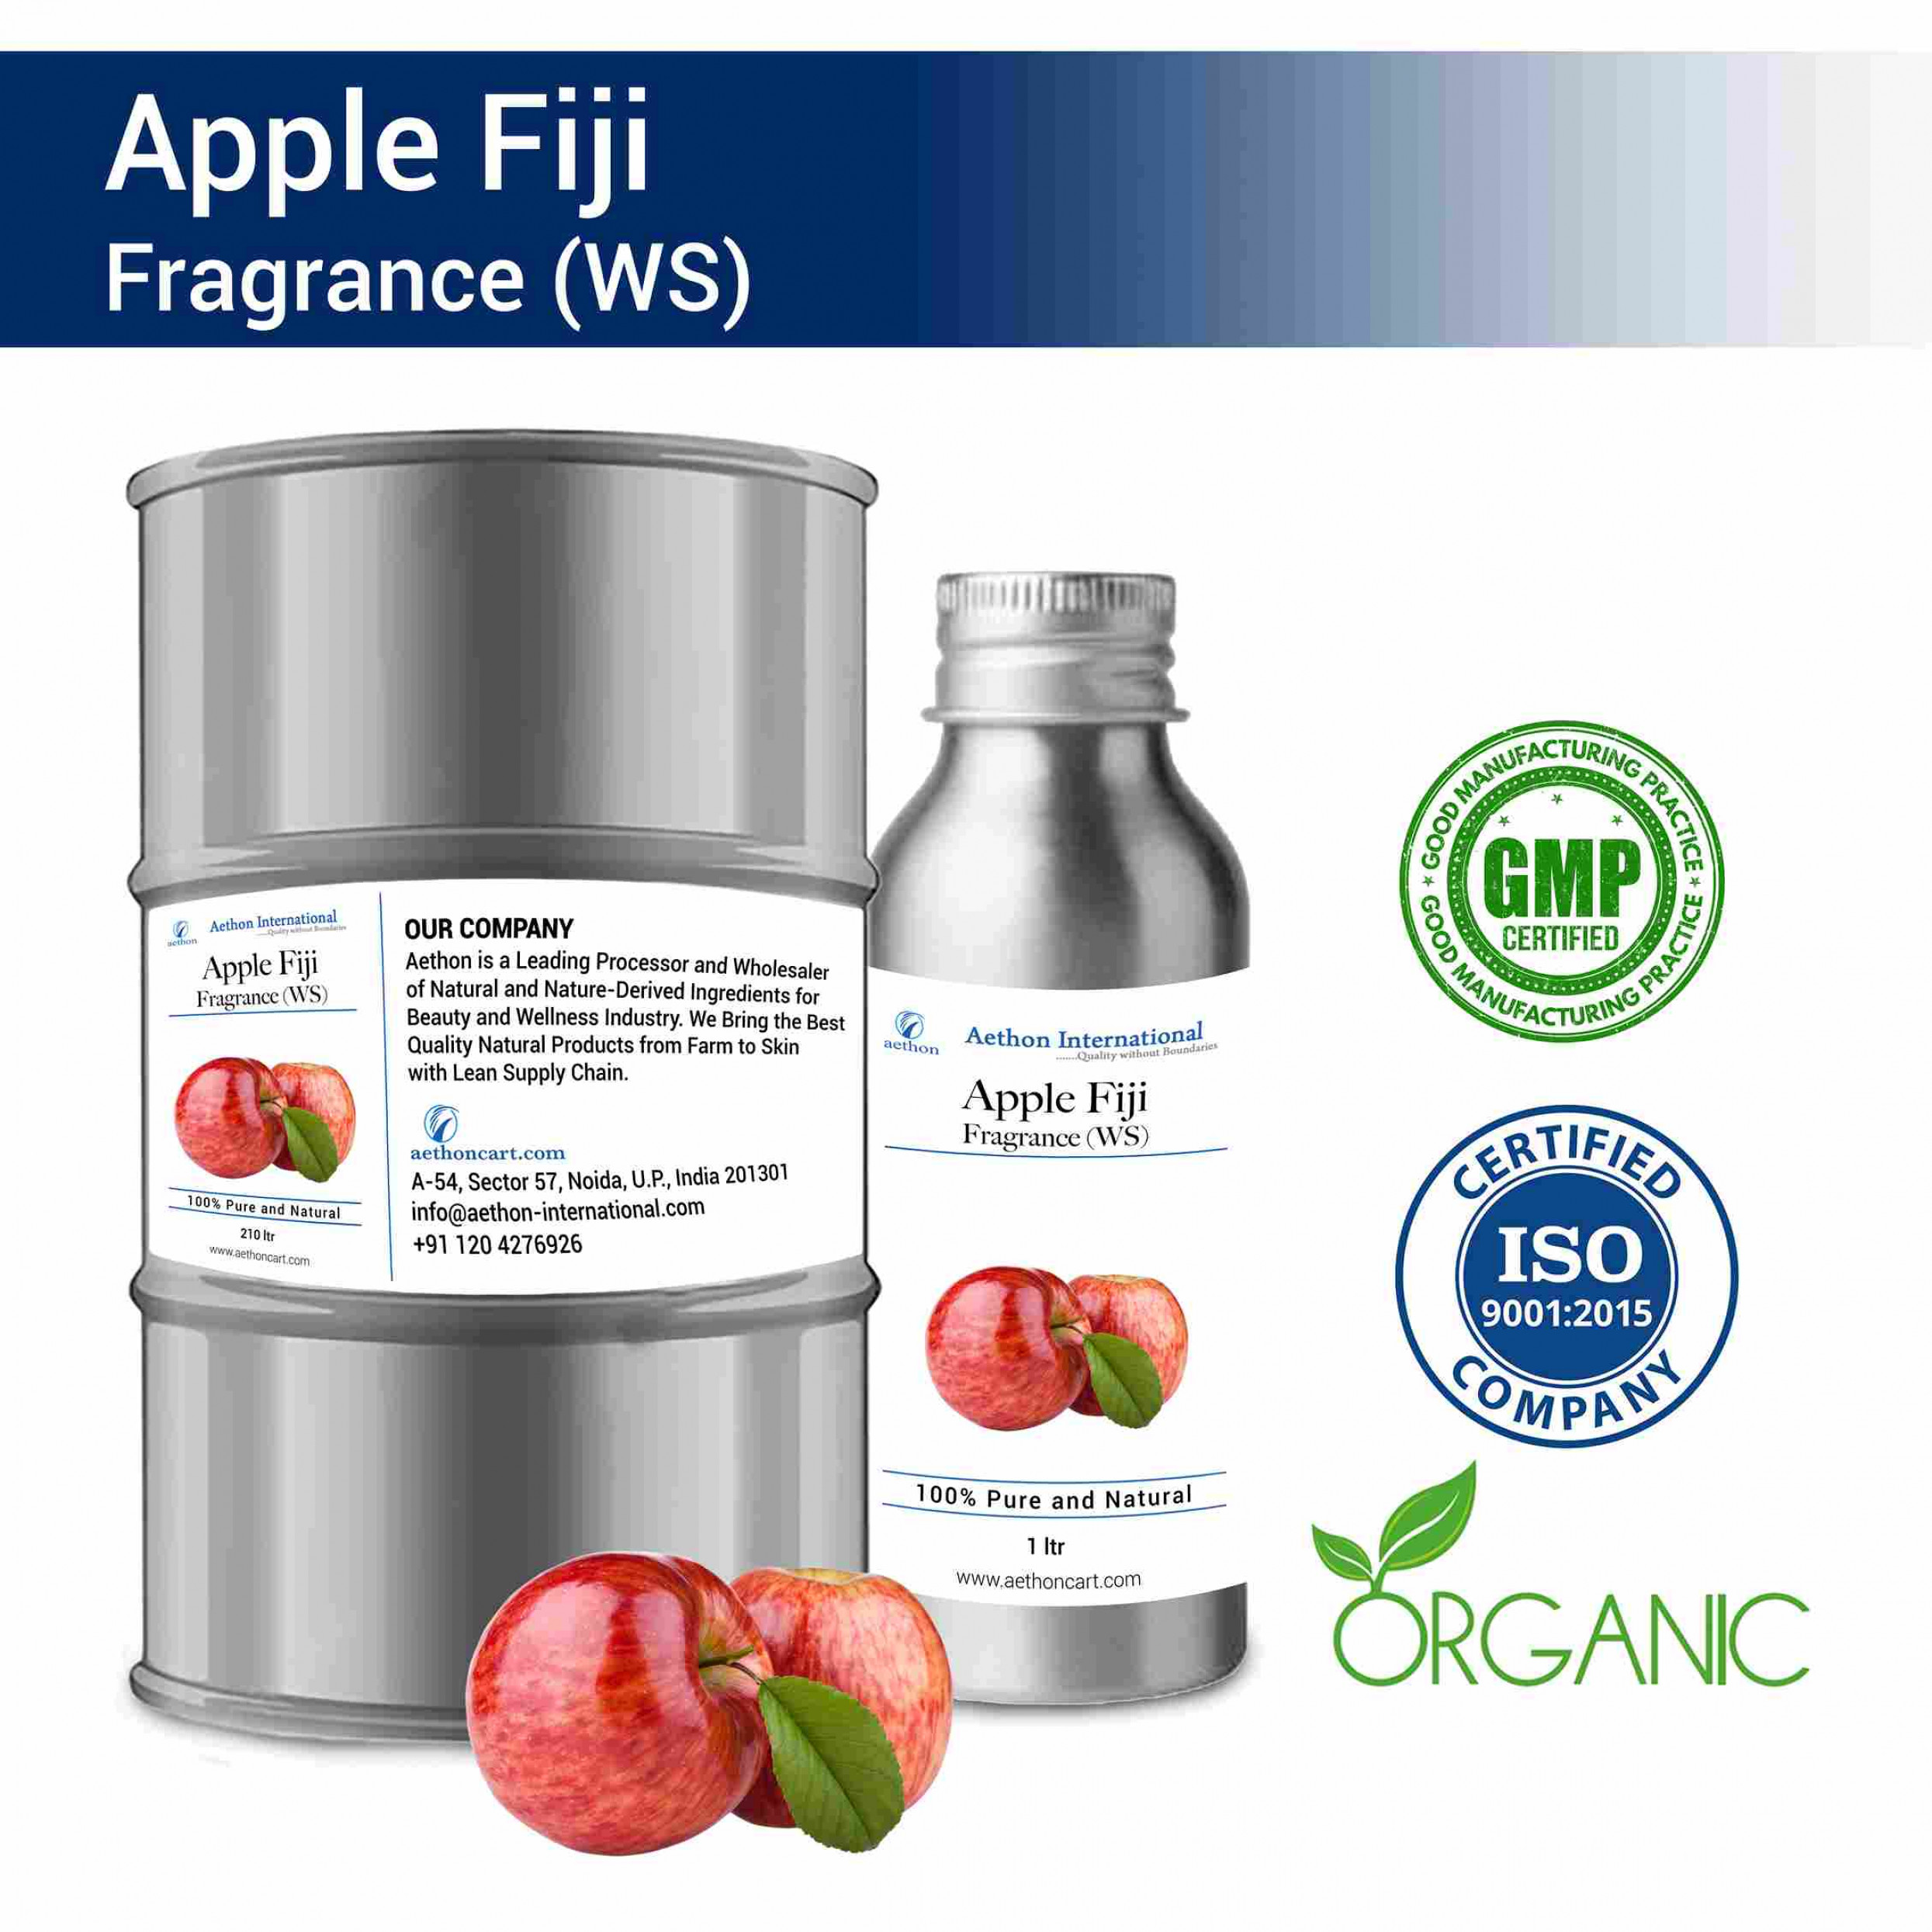 Apple Fiji Fragrance (WS)